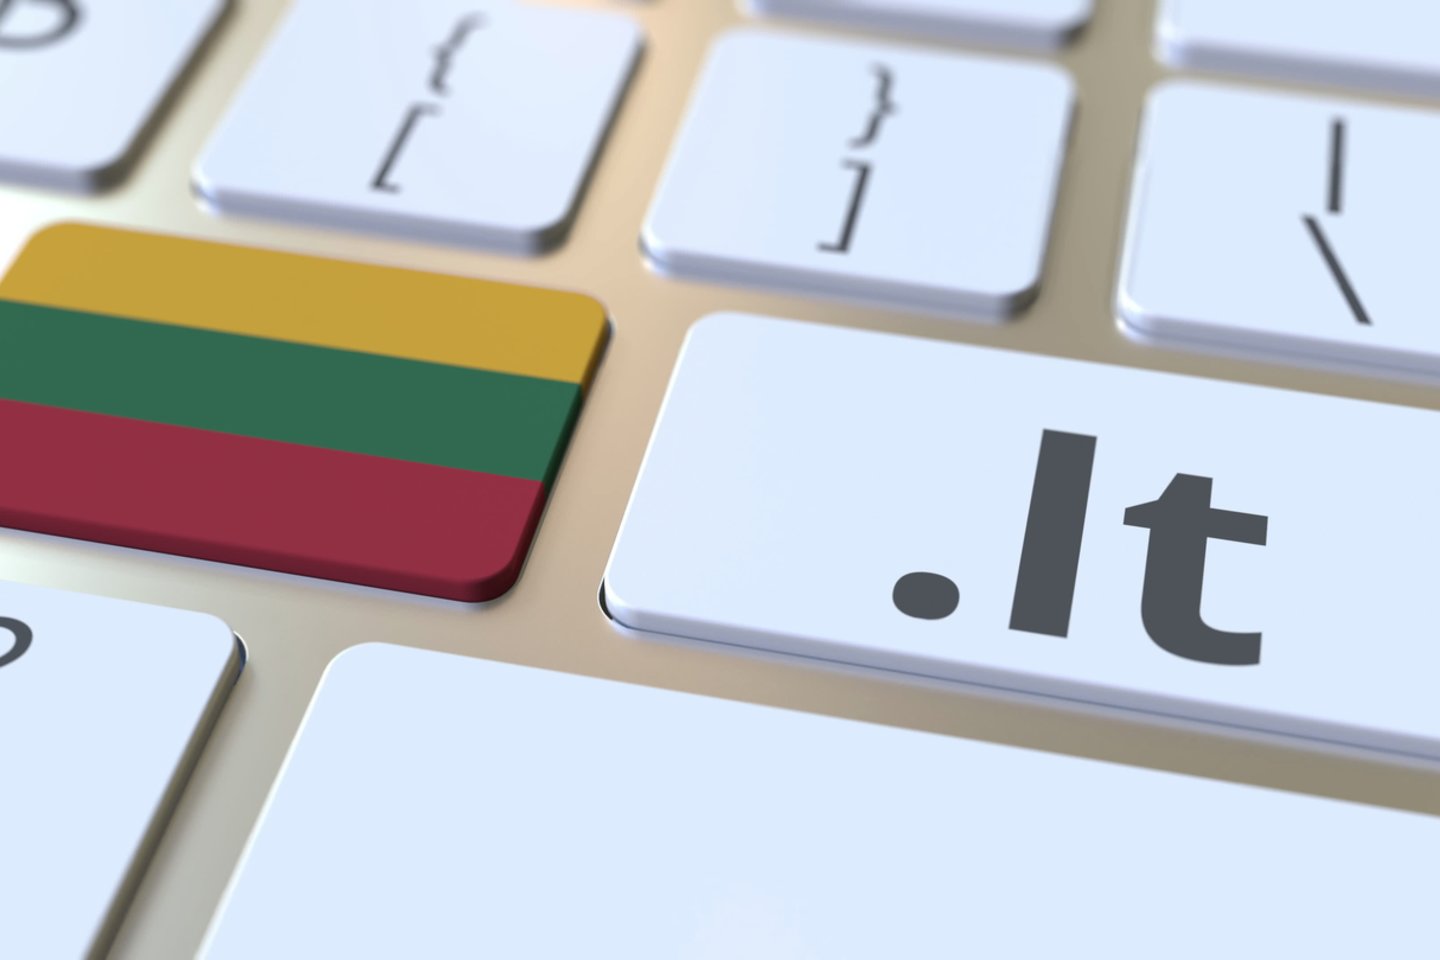  Gražiausio lietuviško interneto vardo konkursą šiais metais laimėjo domenas kupolė.lt, surinkęs daugiausiai internautų balsų.<br> 123rf iliustr.